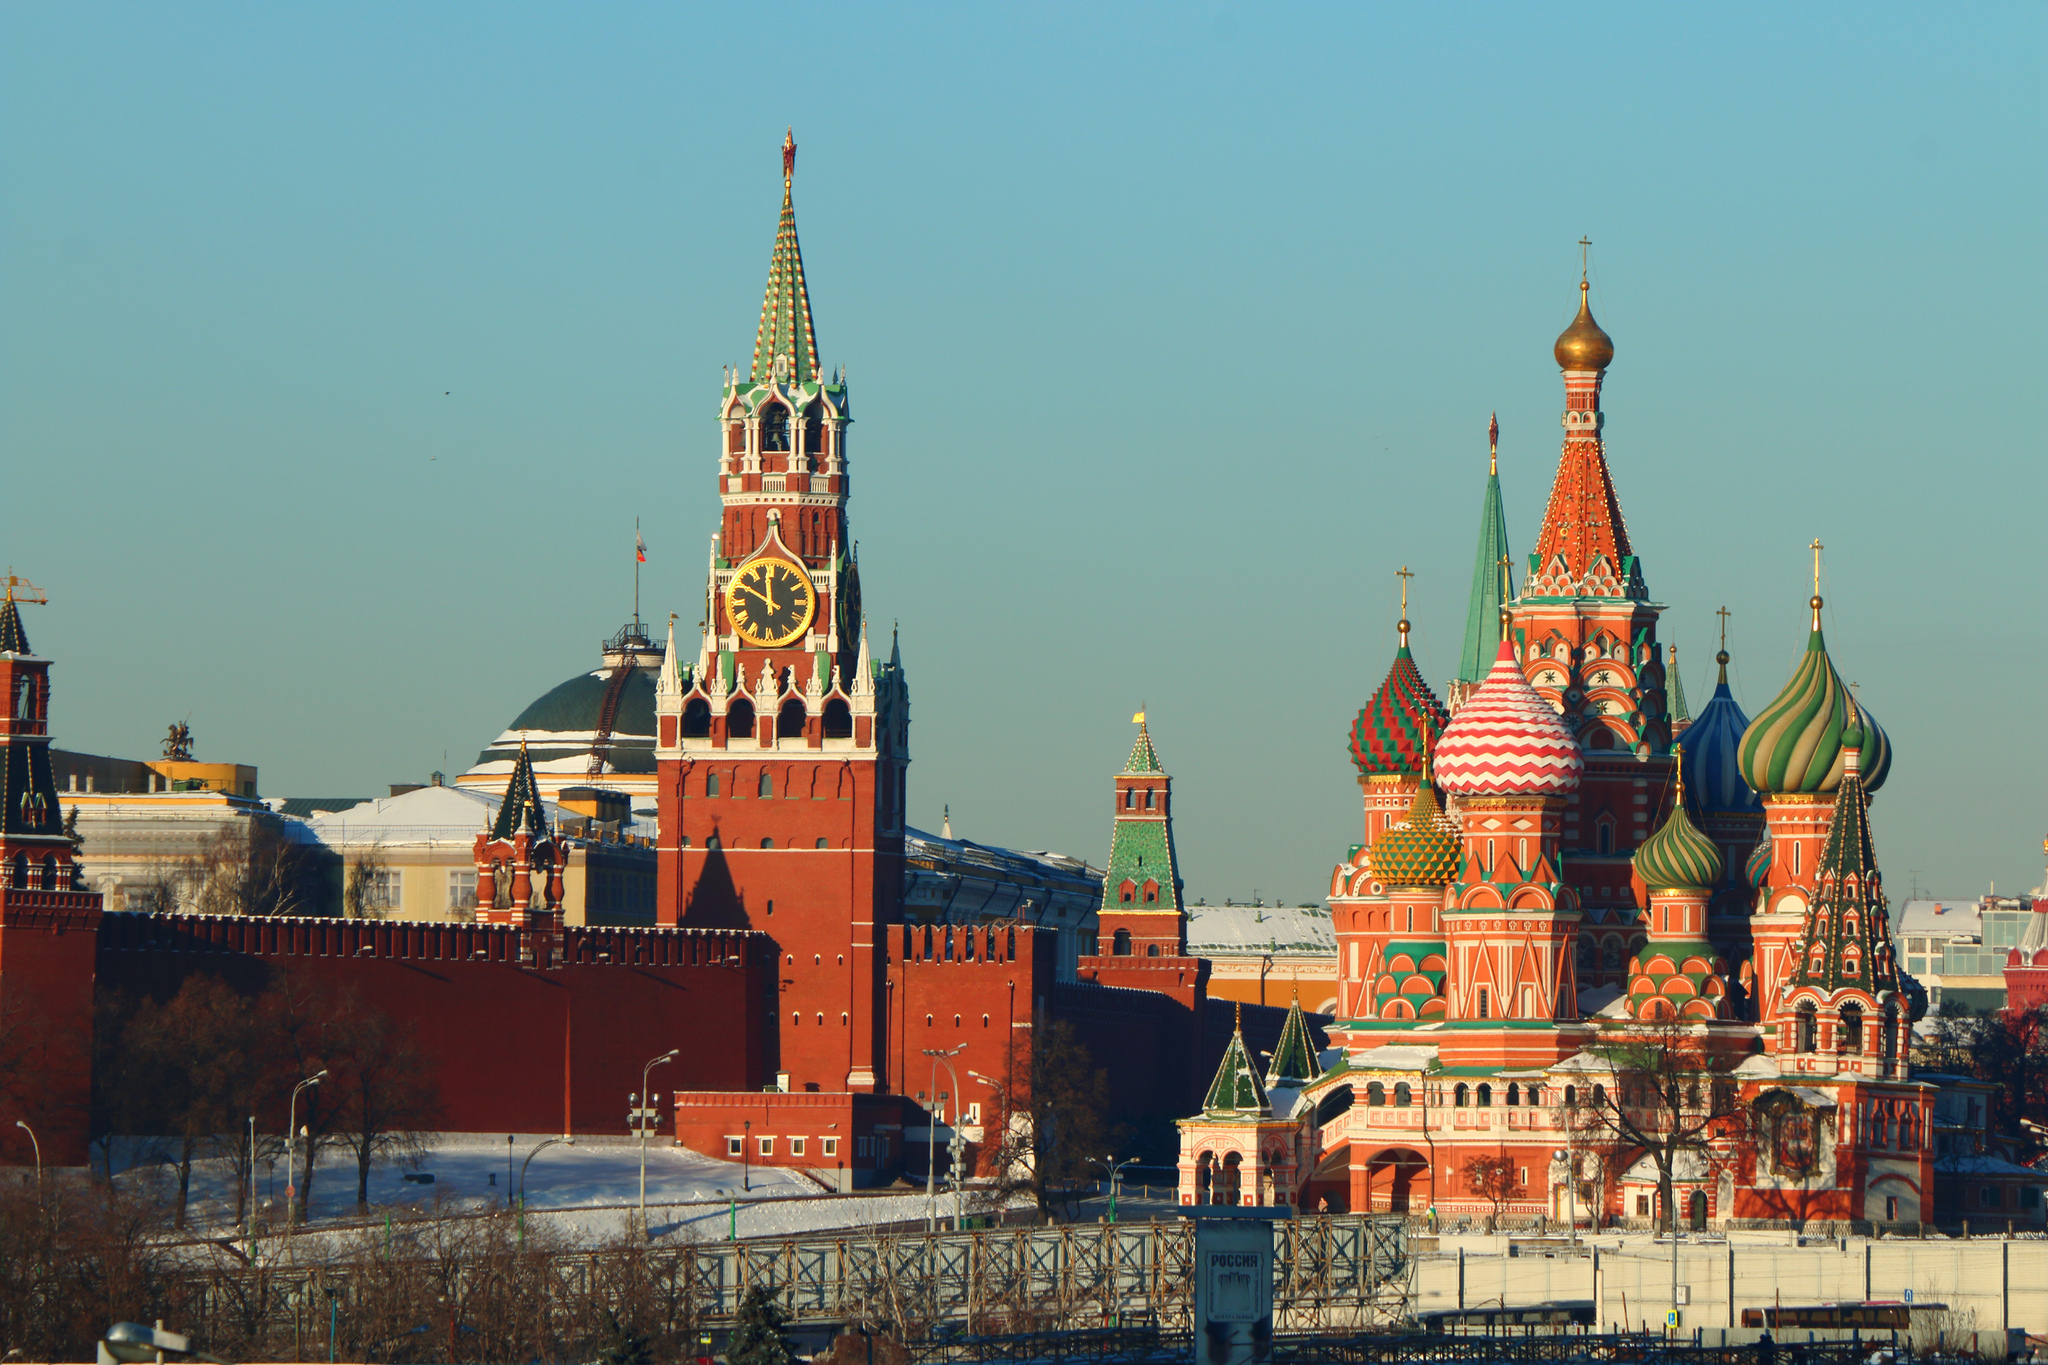 Картинка кремлевской. Кремль и красная площадь и храм Василия Блаженного.